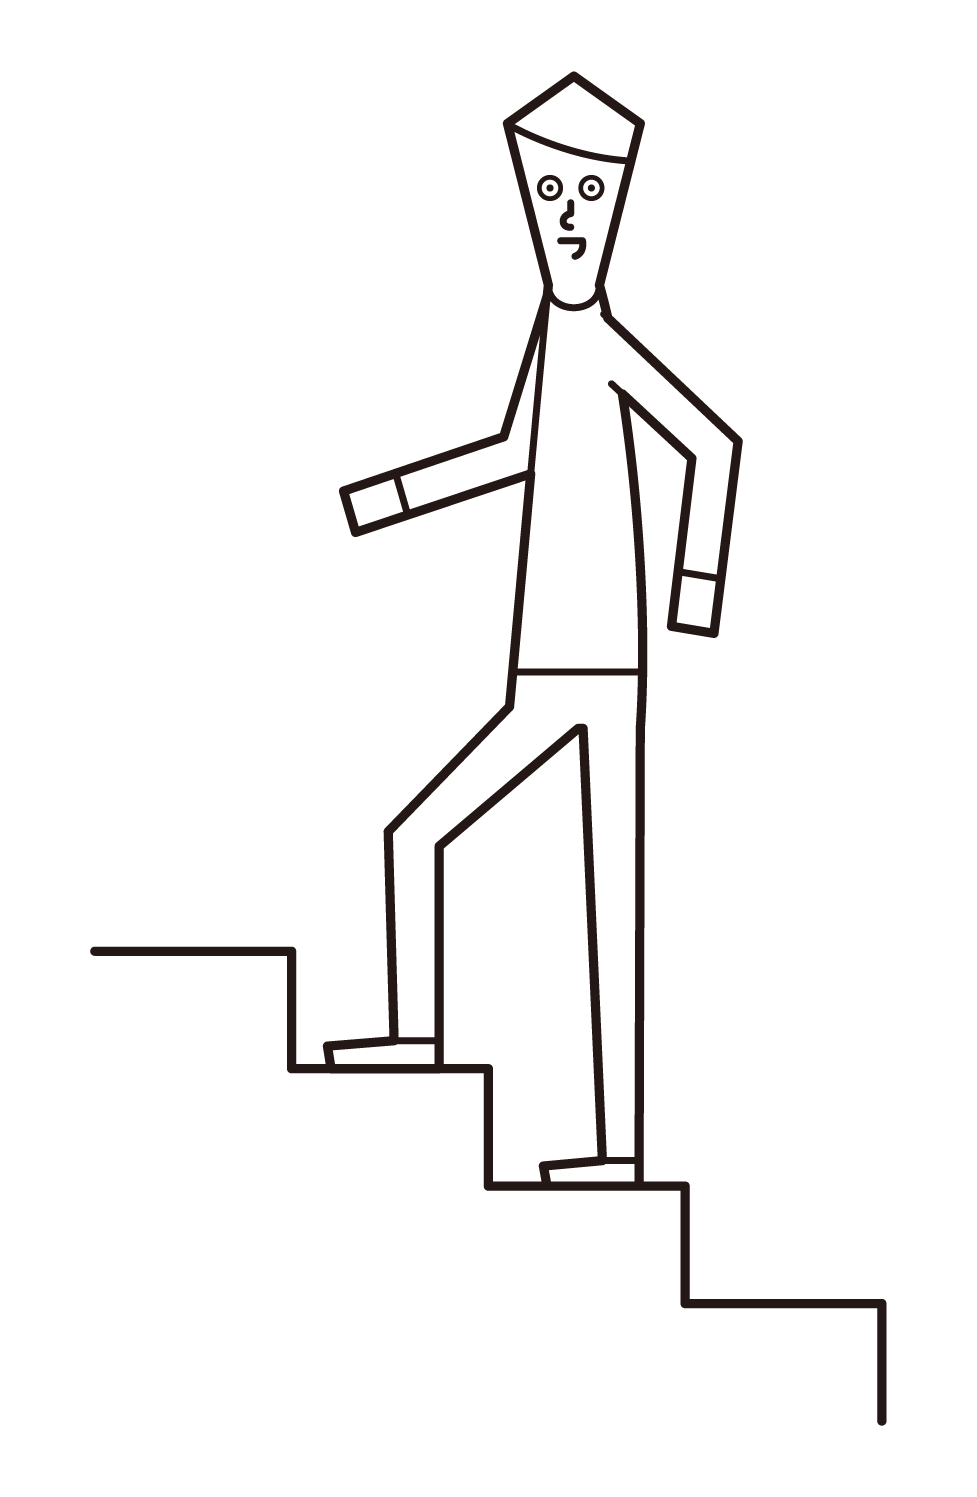 계단을 올라가는 남자의 그림